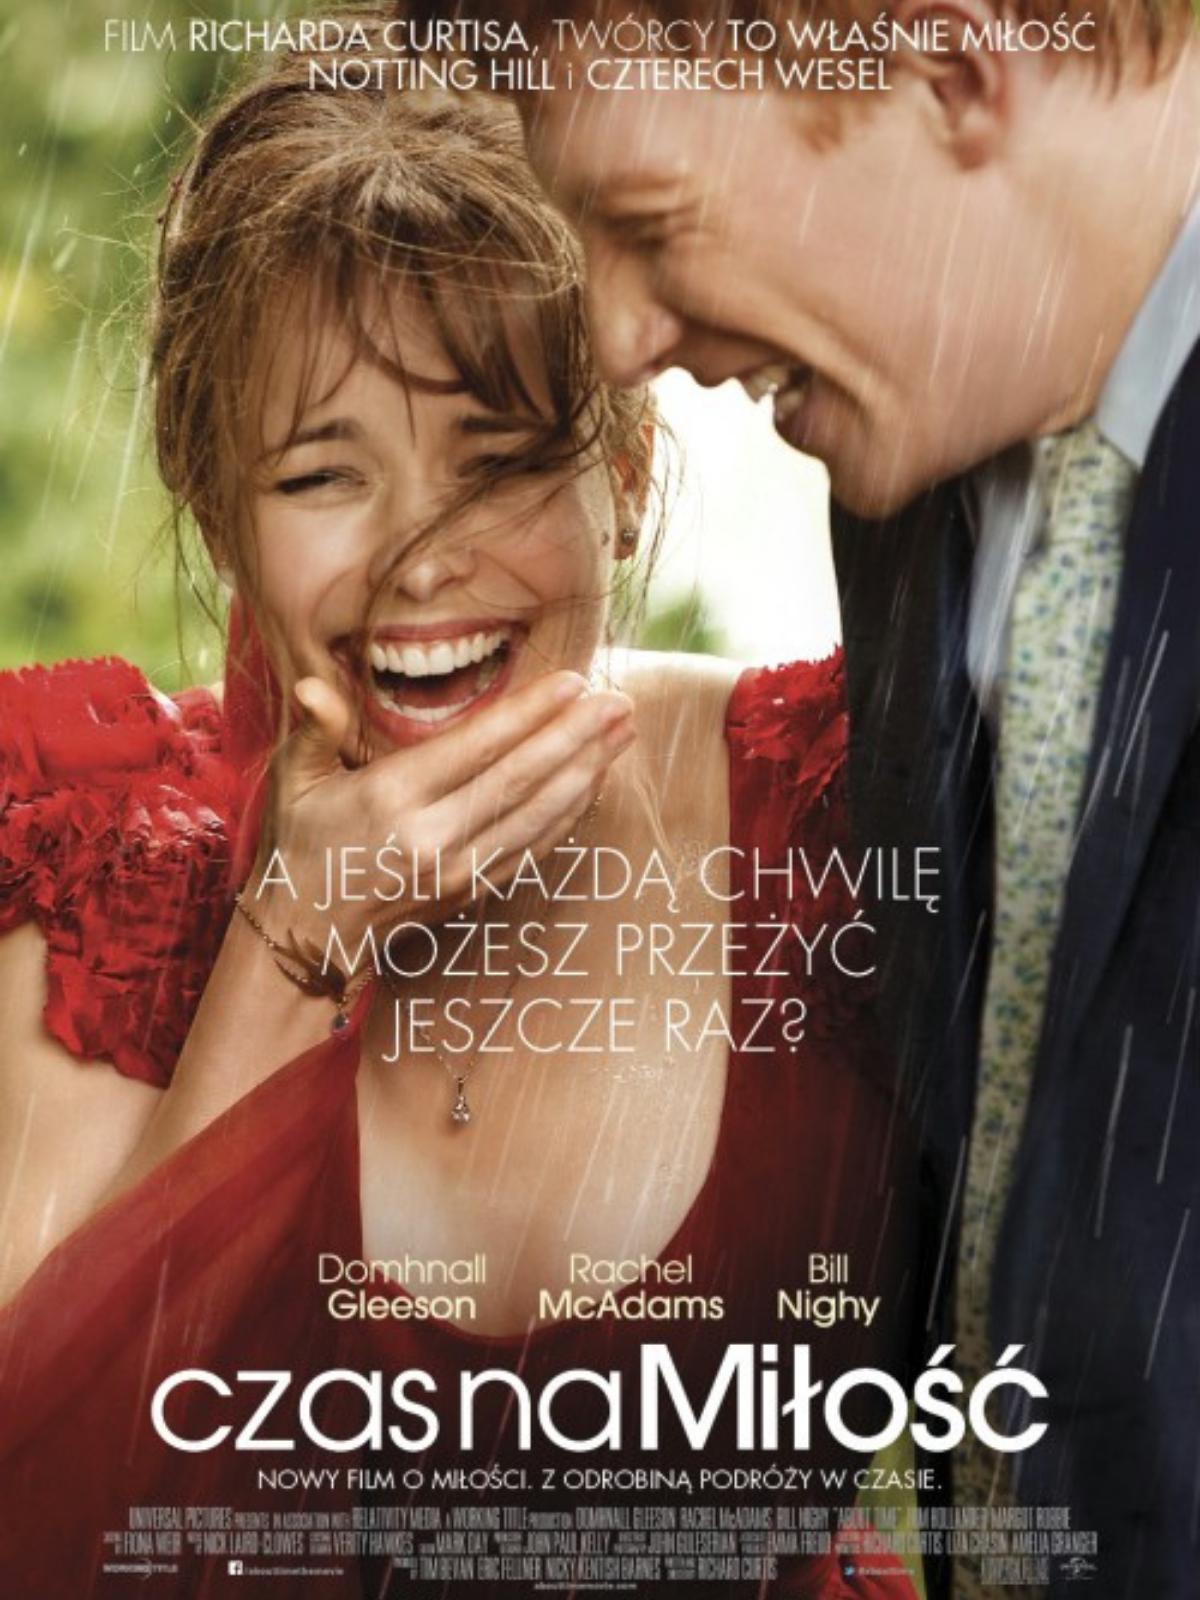 Plakat z filmu Czas na miłość